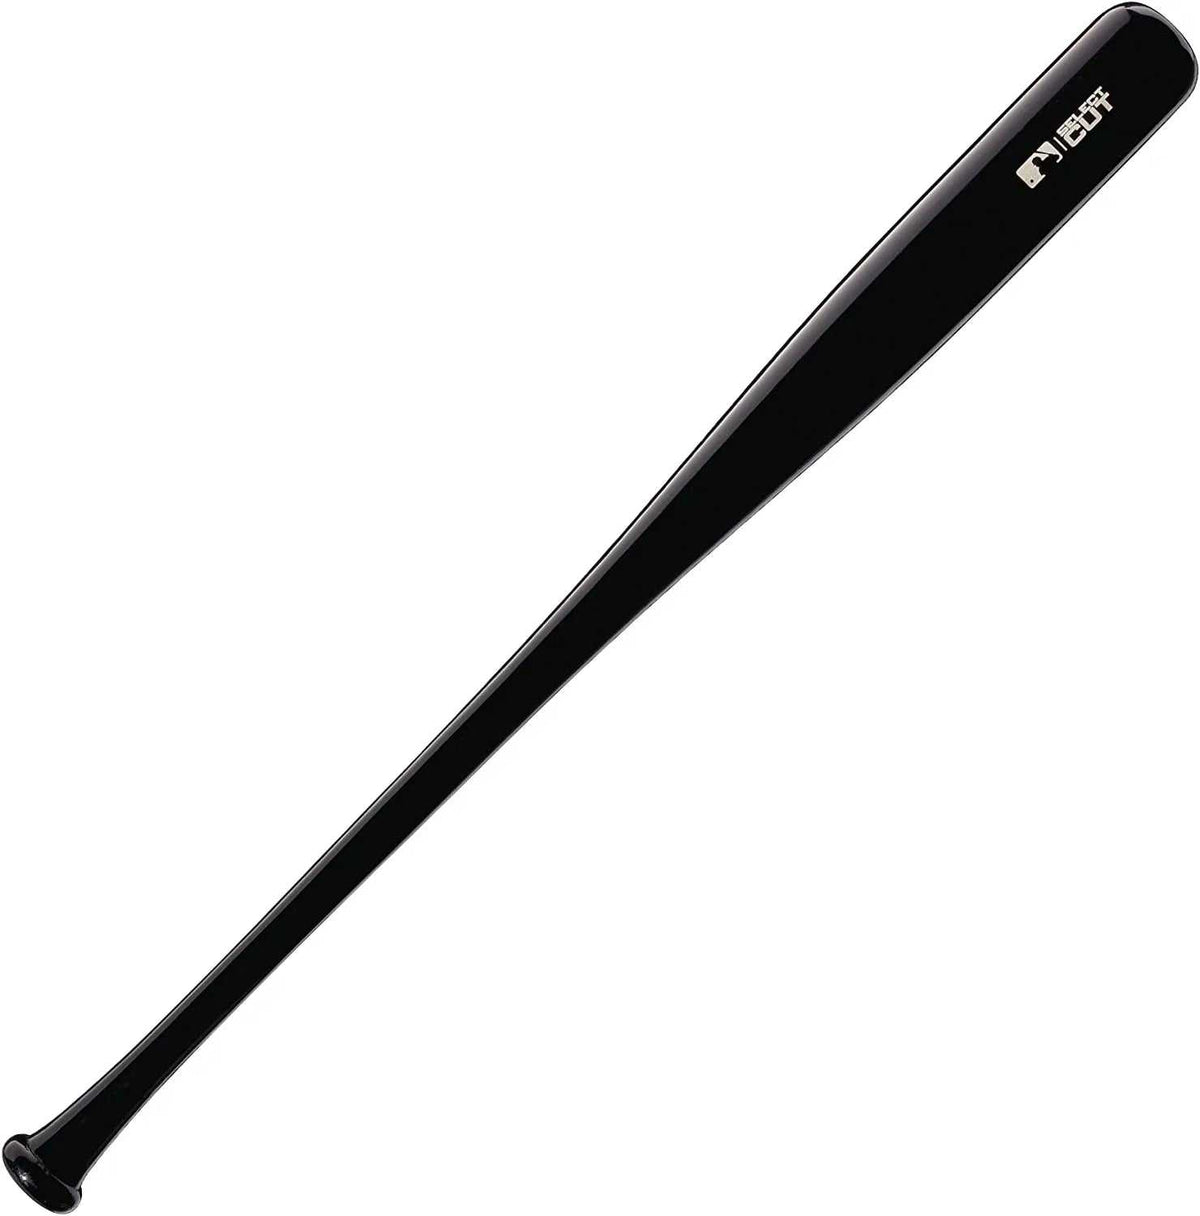 Louisville Slugger Select M9 C243 Maple Bat - Black - HIT A Double